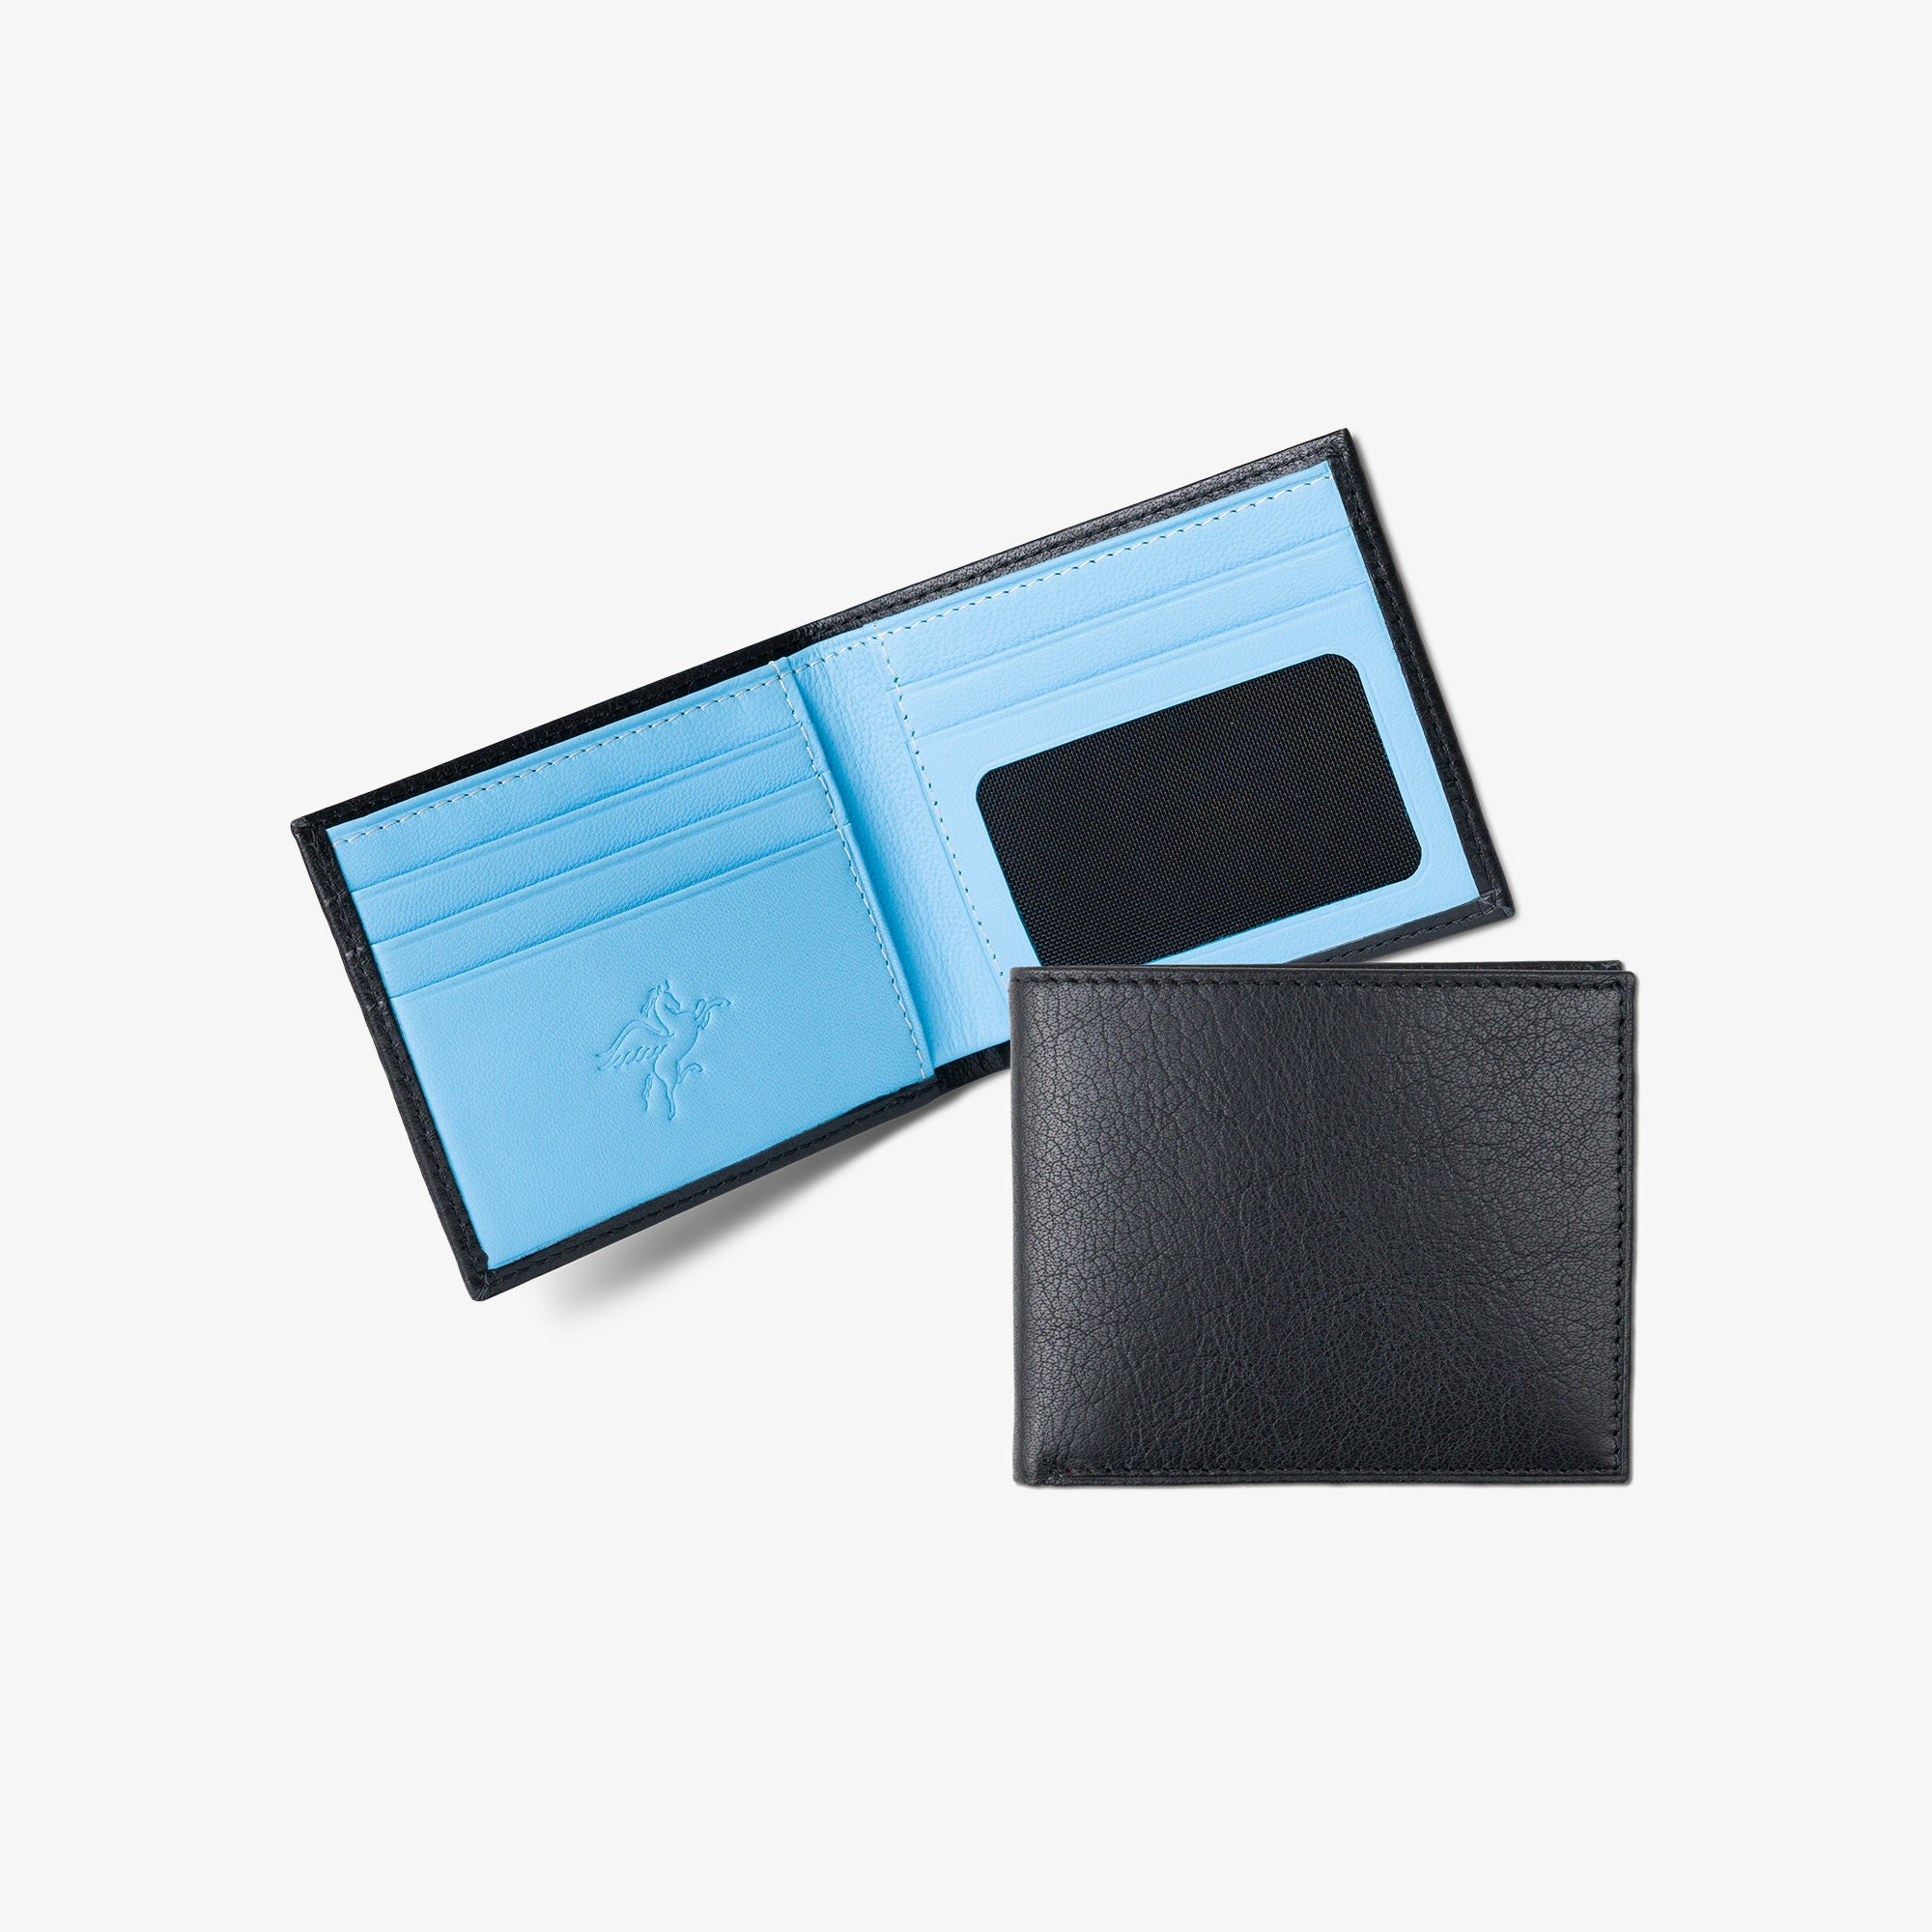 Valmor Design Wallet - Designer Wallets For Men - Best Wallets For Men